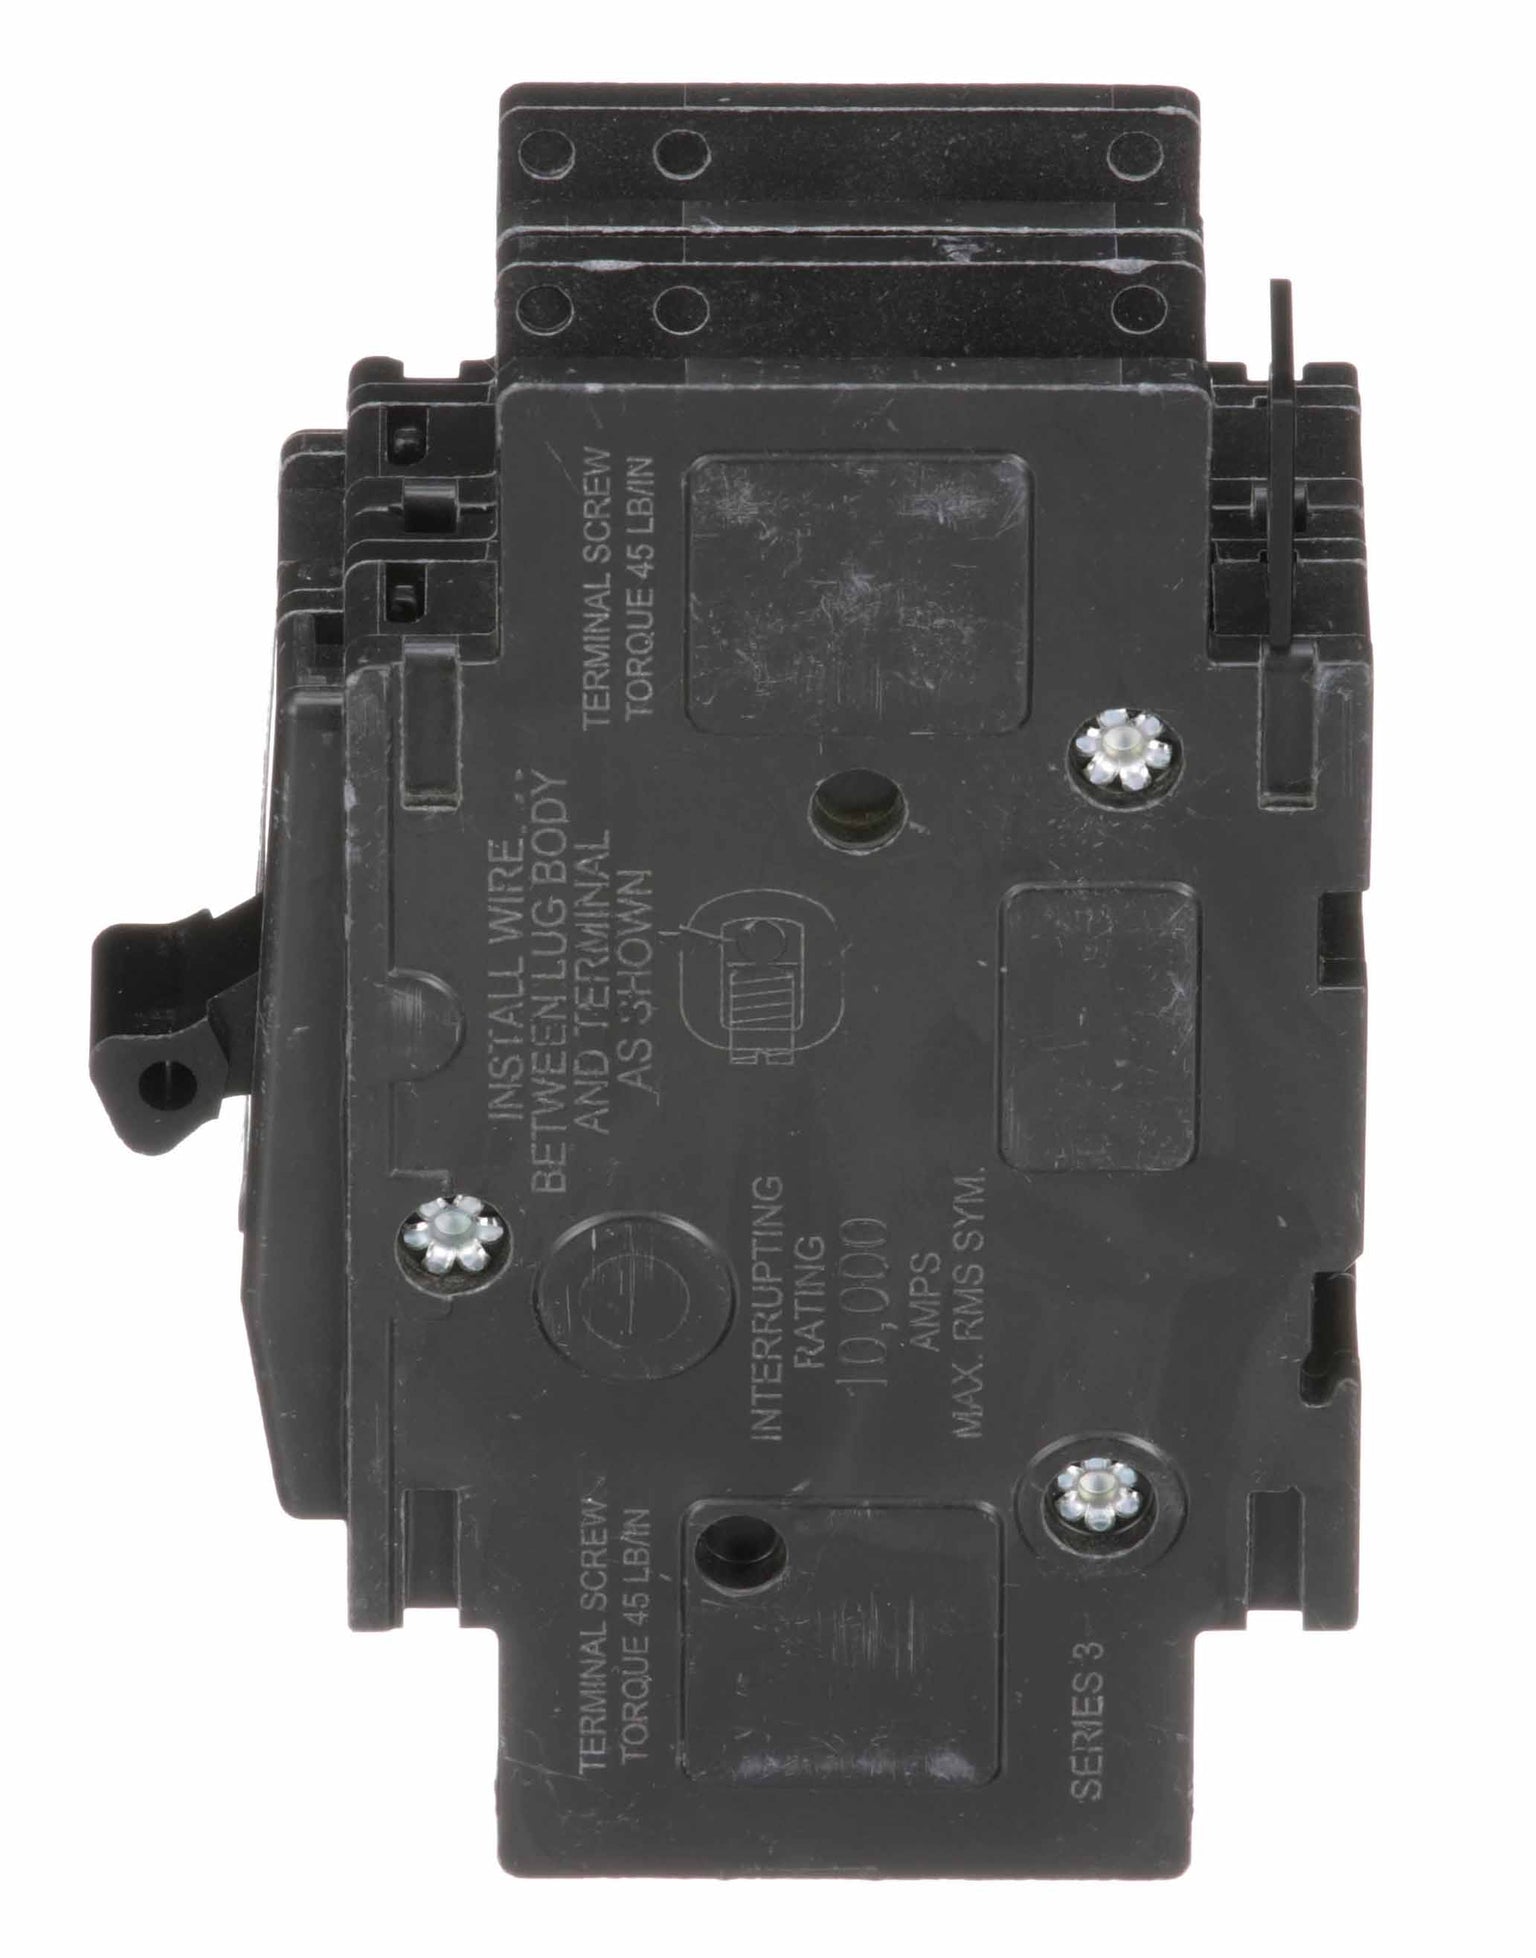 QOU225 - Square D - 25 Amp Circuit Breaker